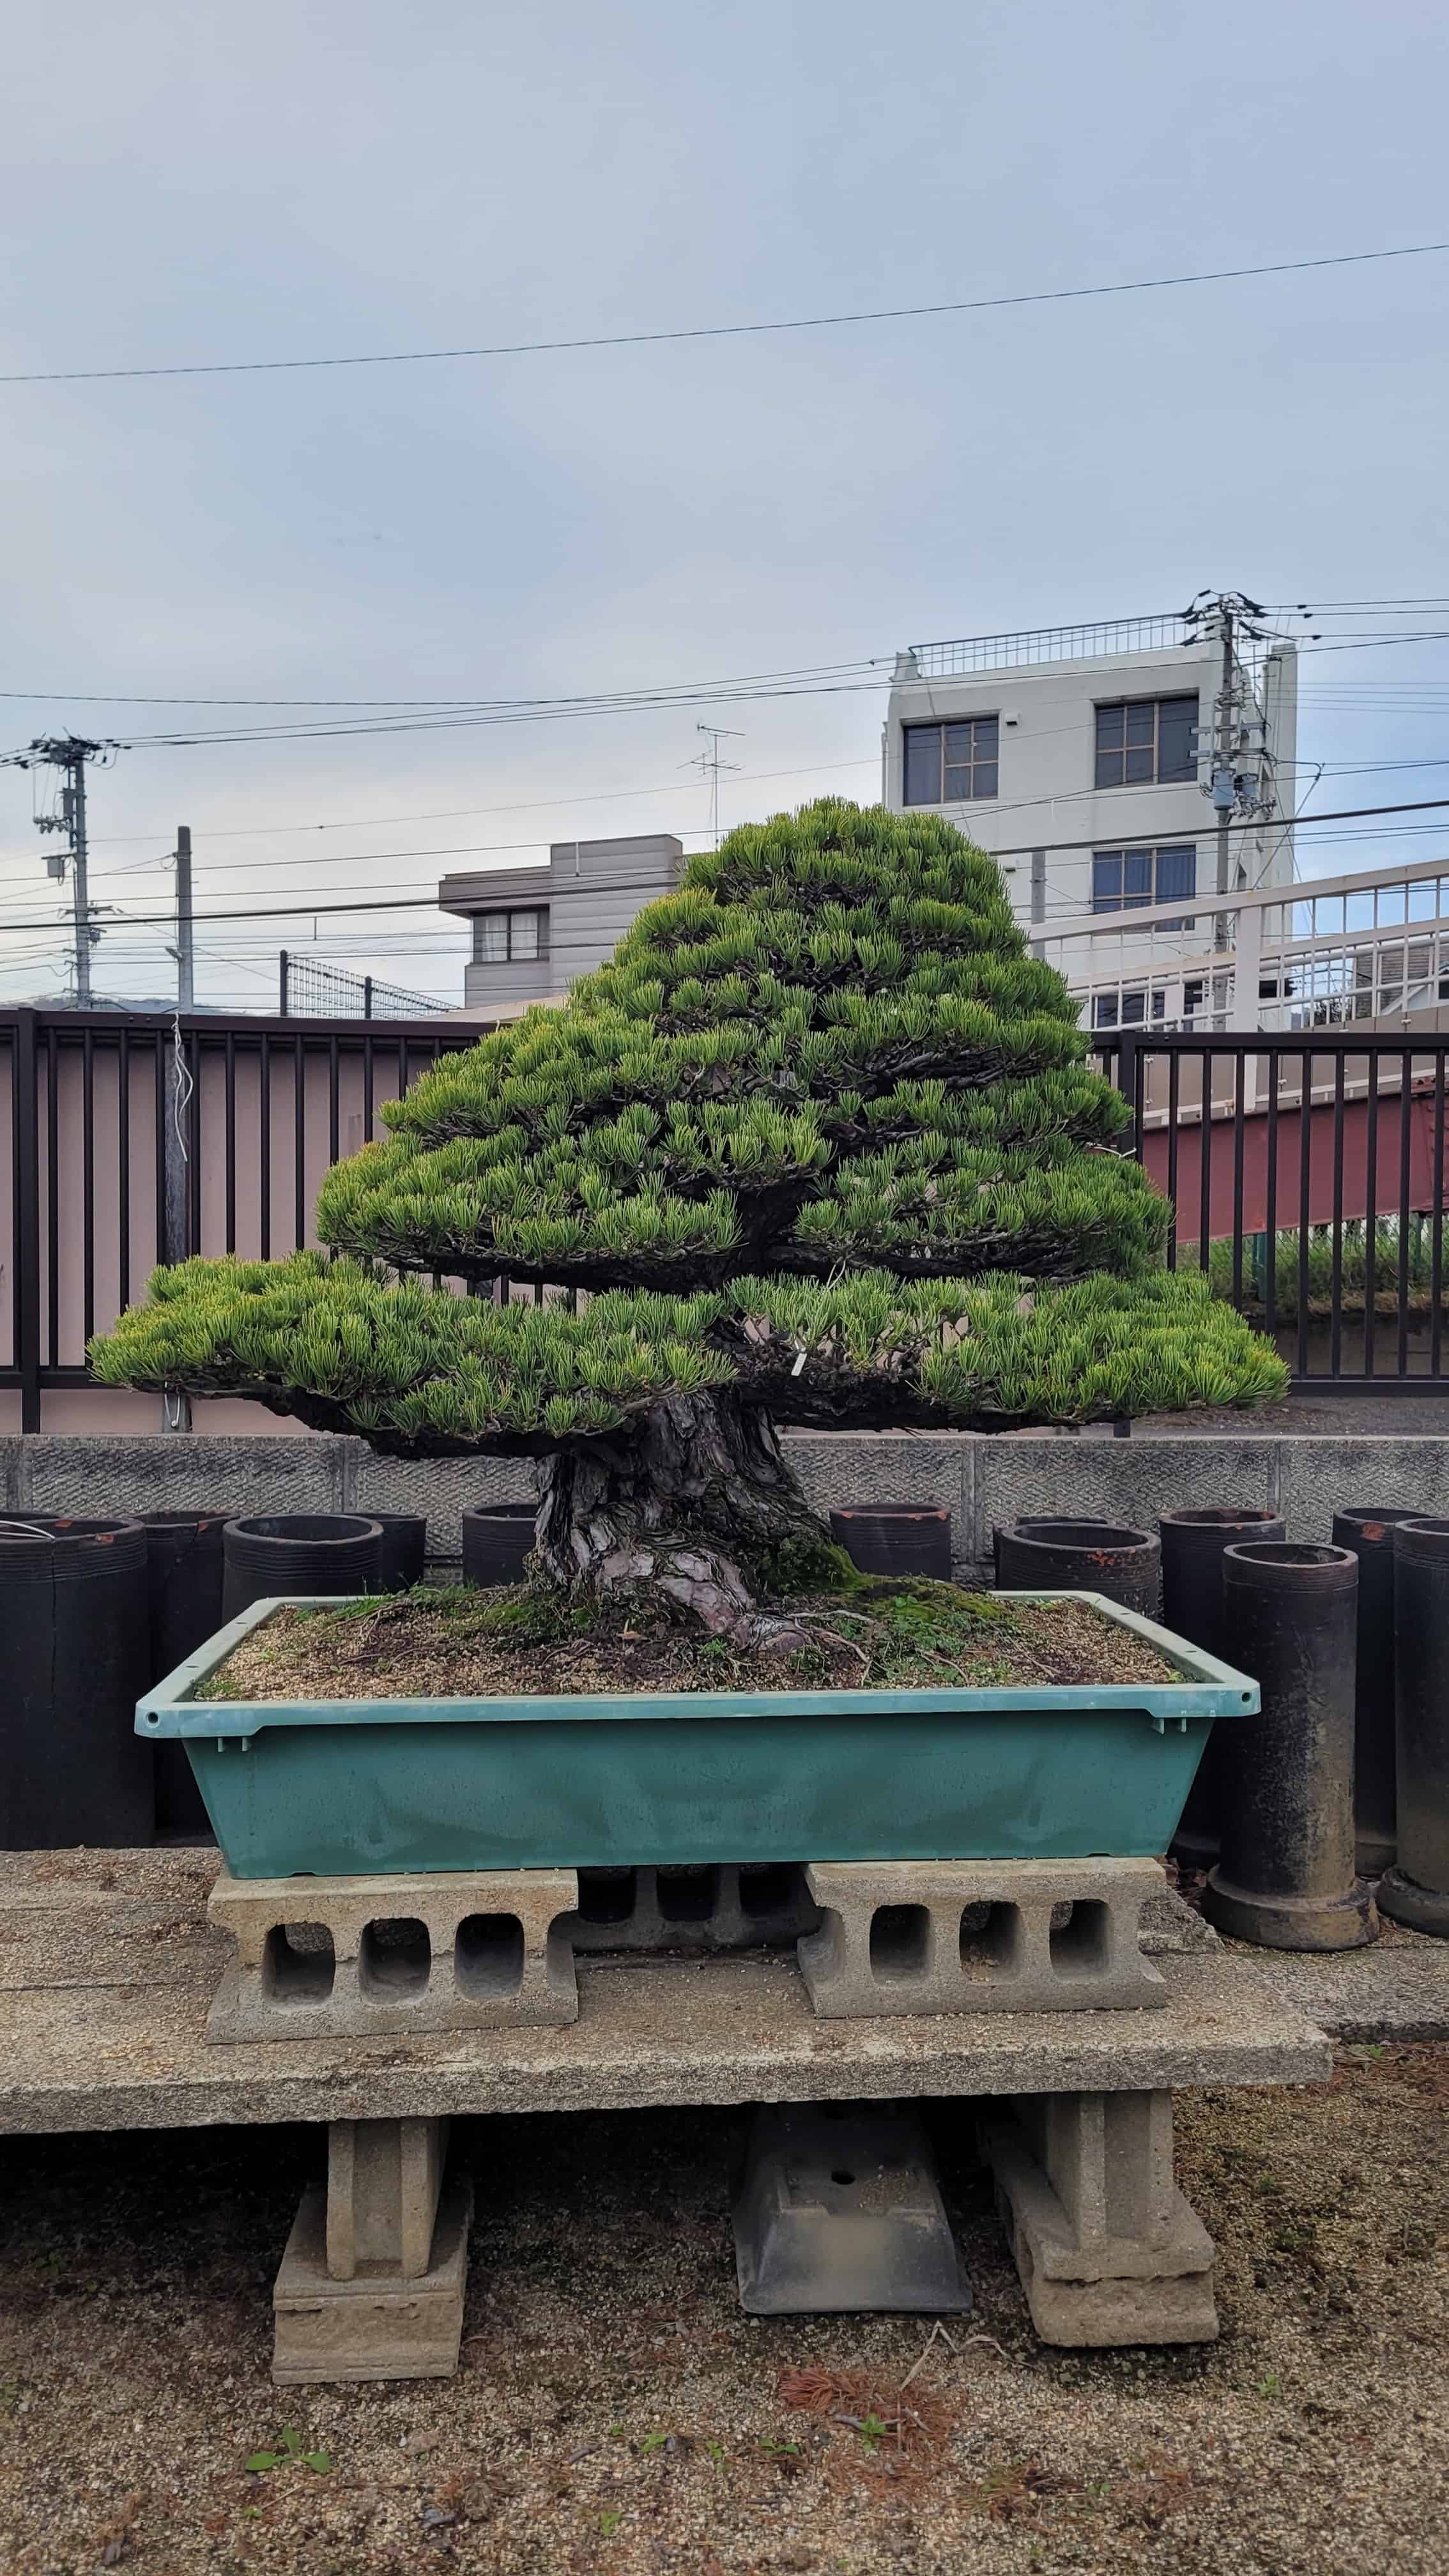 A pine bonsai tree from yoseien in Japan